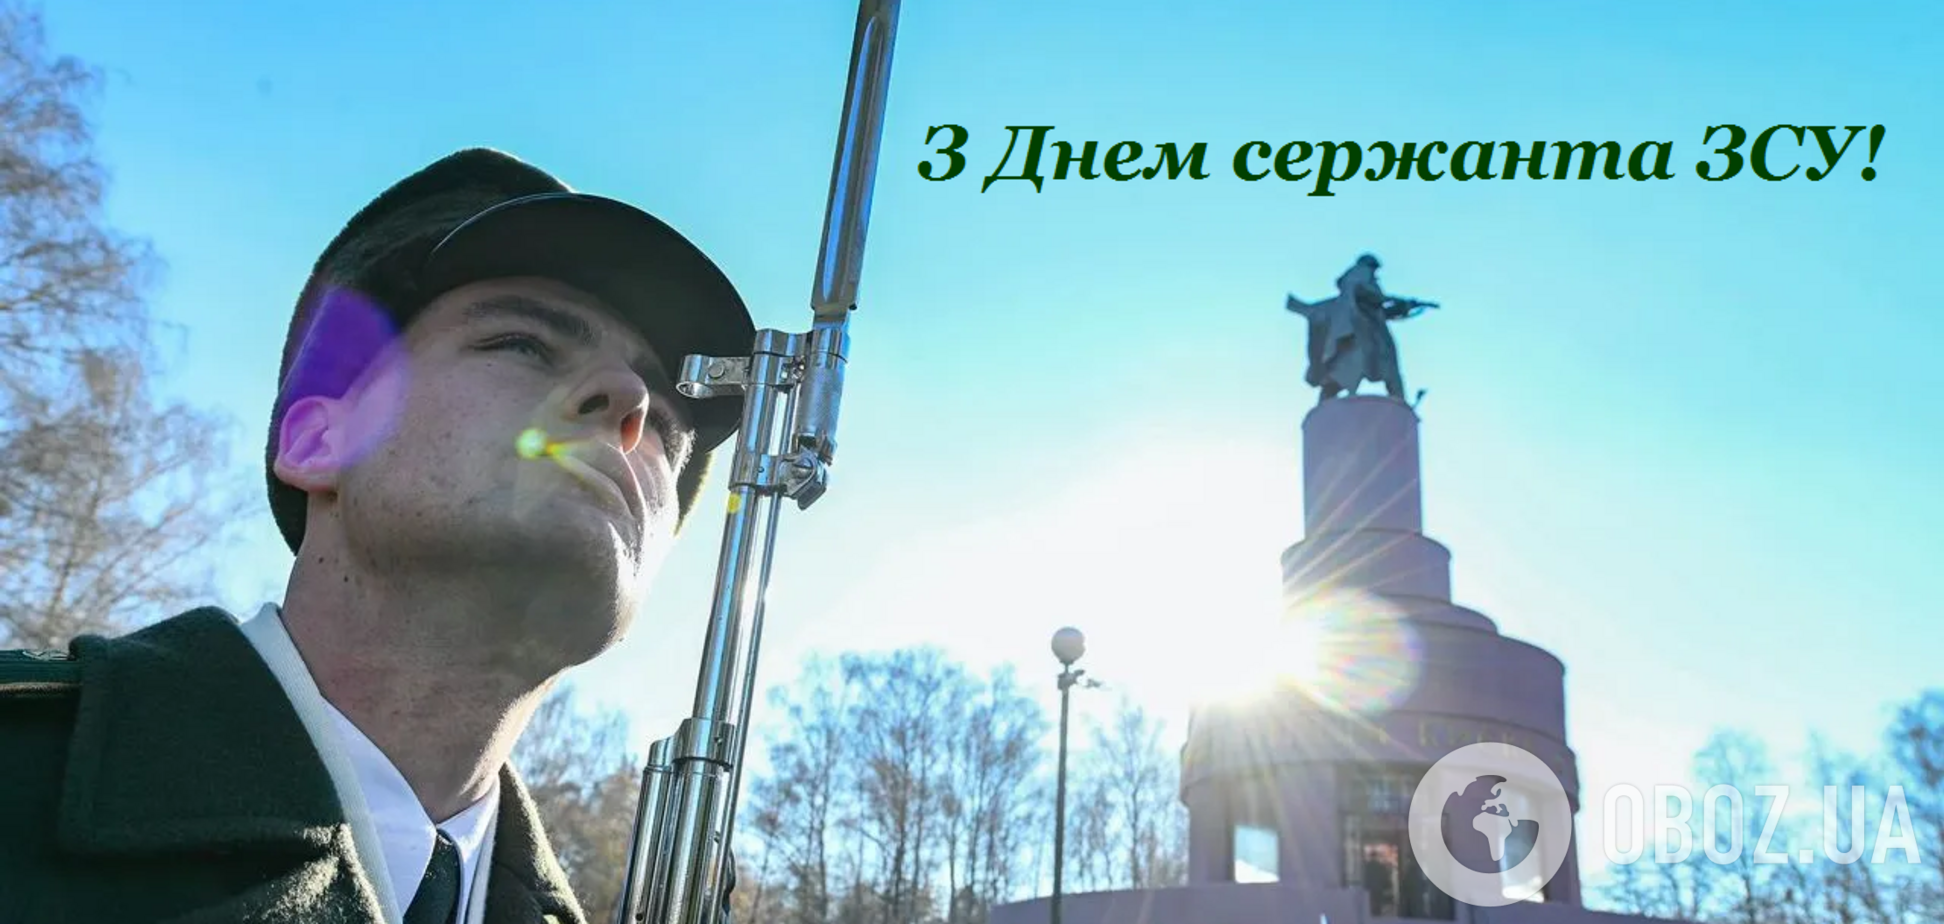 День сержанта Збройних сил України